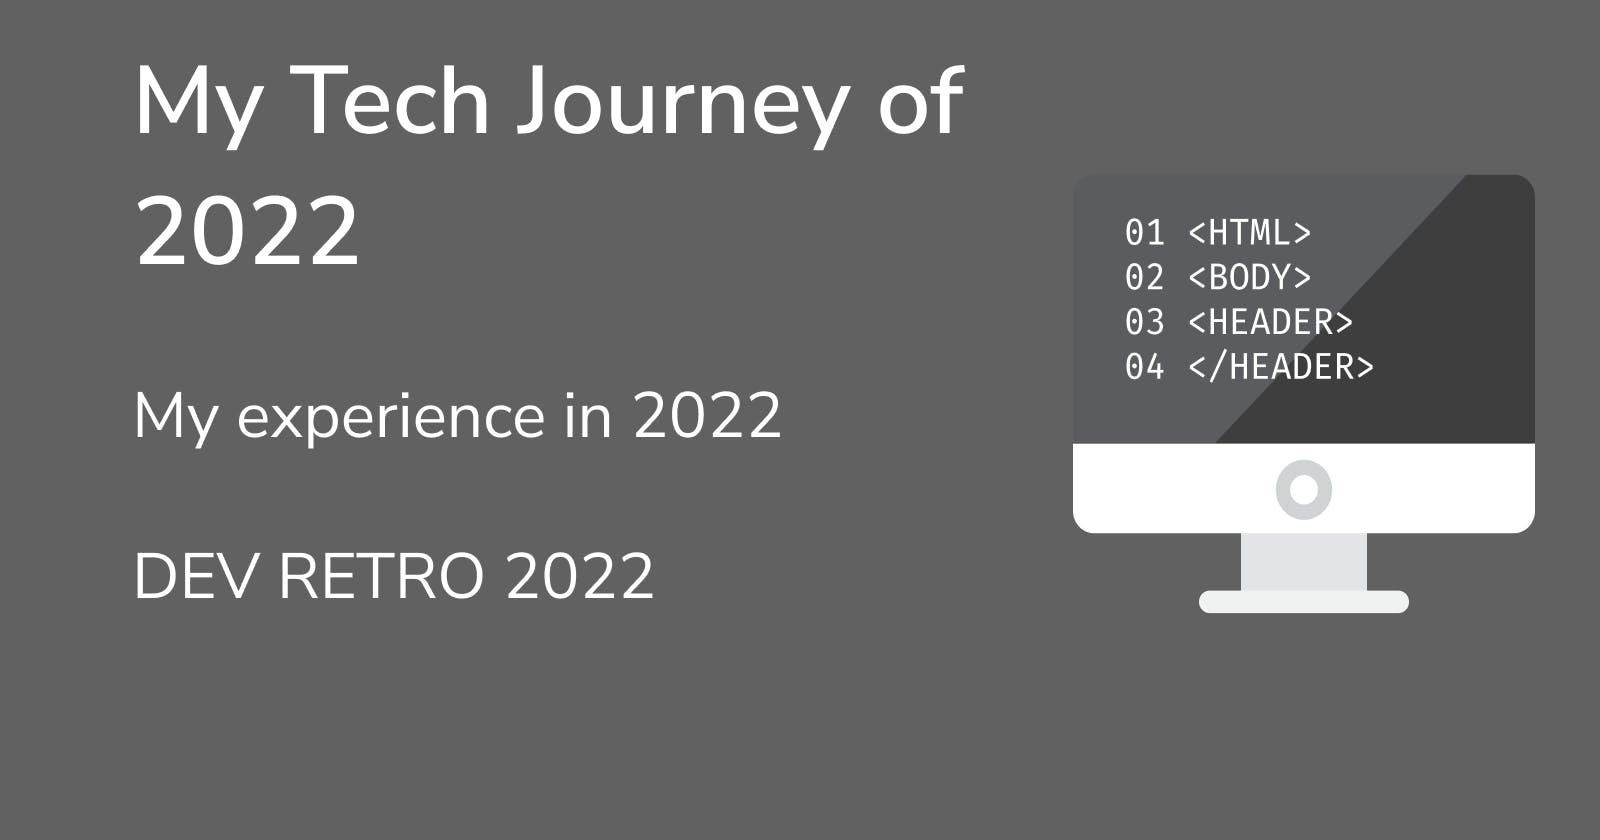 Dev Retro 2022: My Journey as a Teen developer in 2022